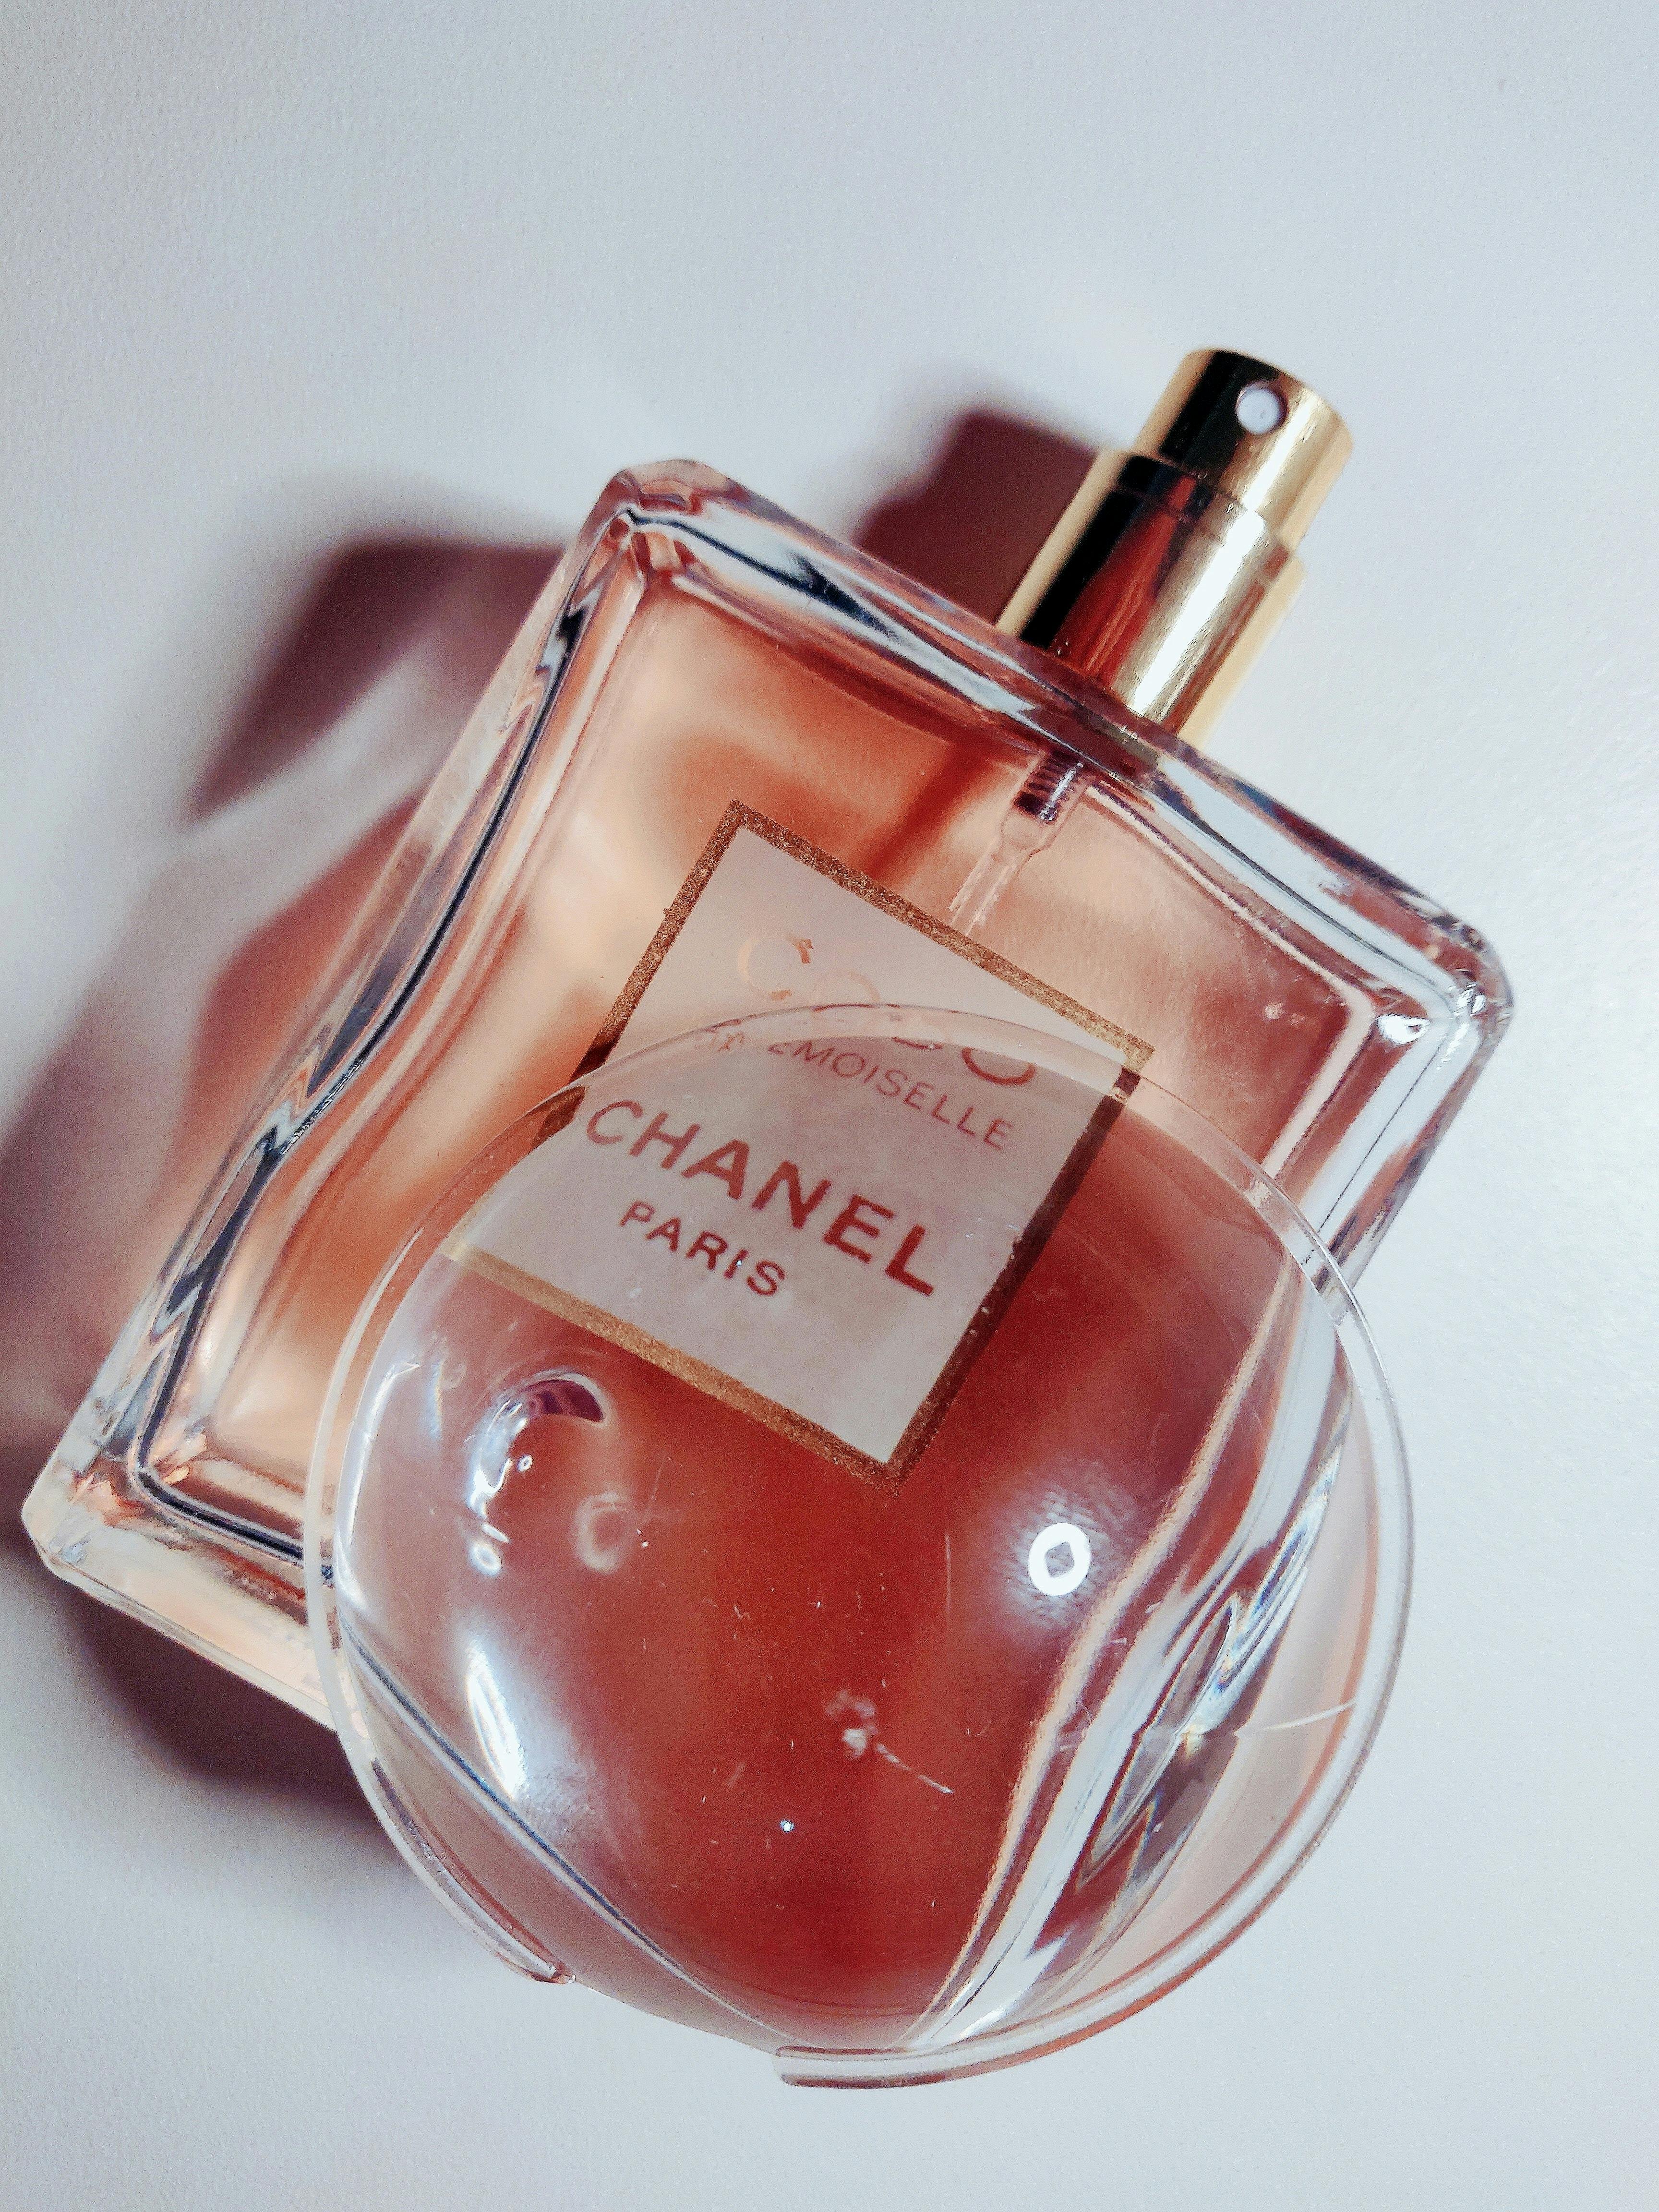 Chanel Paris Eua De Parfum Bottle · Free Stock Photo